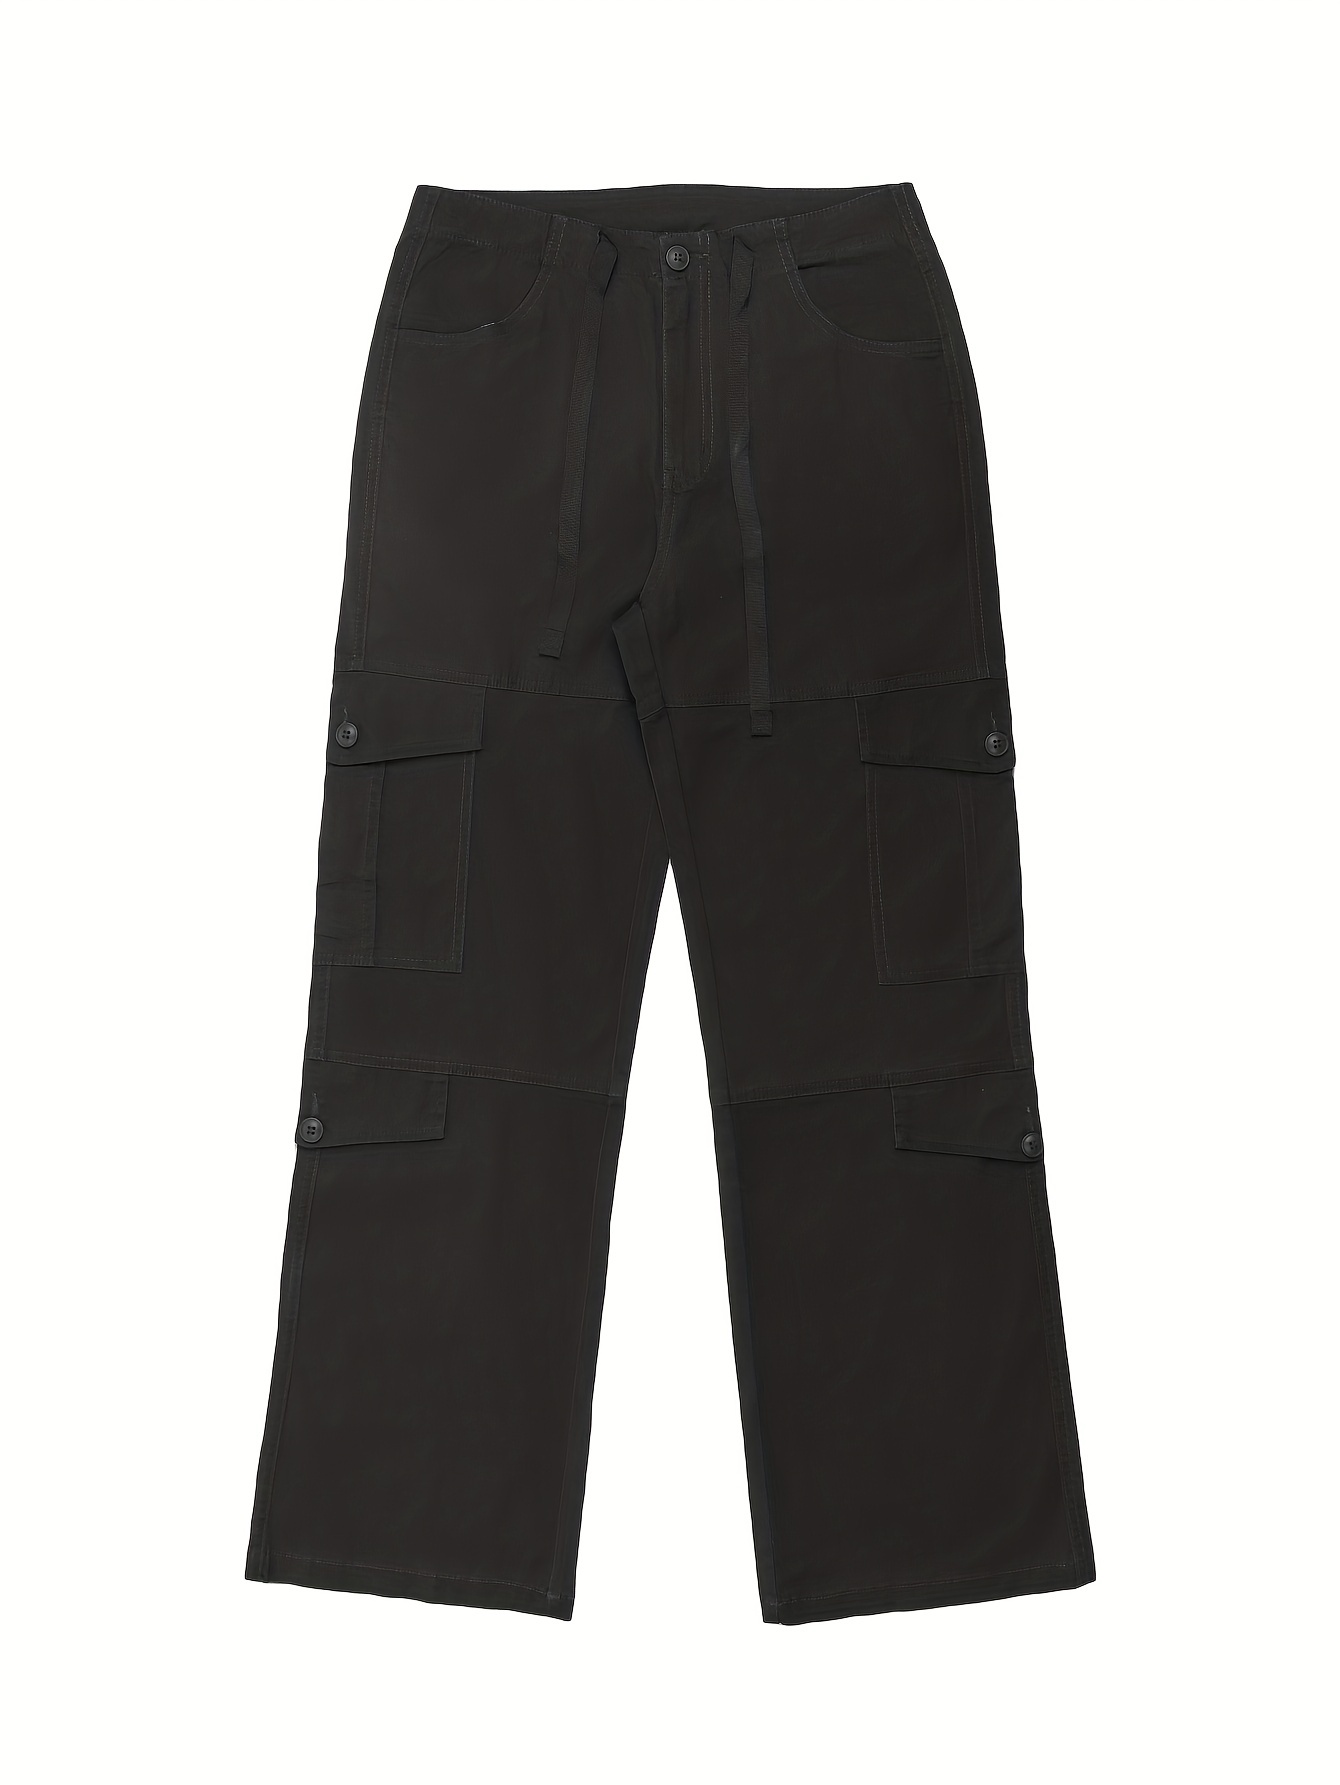 Unisex Y2K Vintage Style Cargo Pants Size Medium, Beige-brown -  Hong  Kong